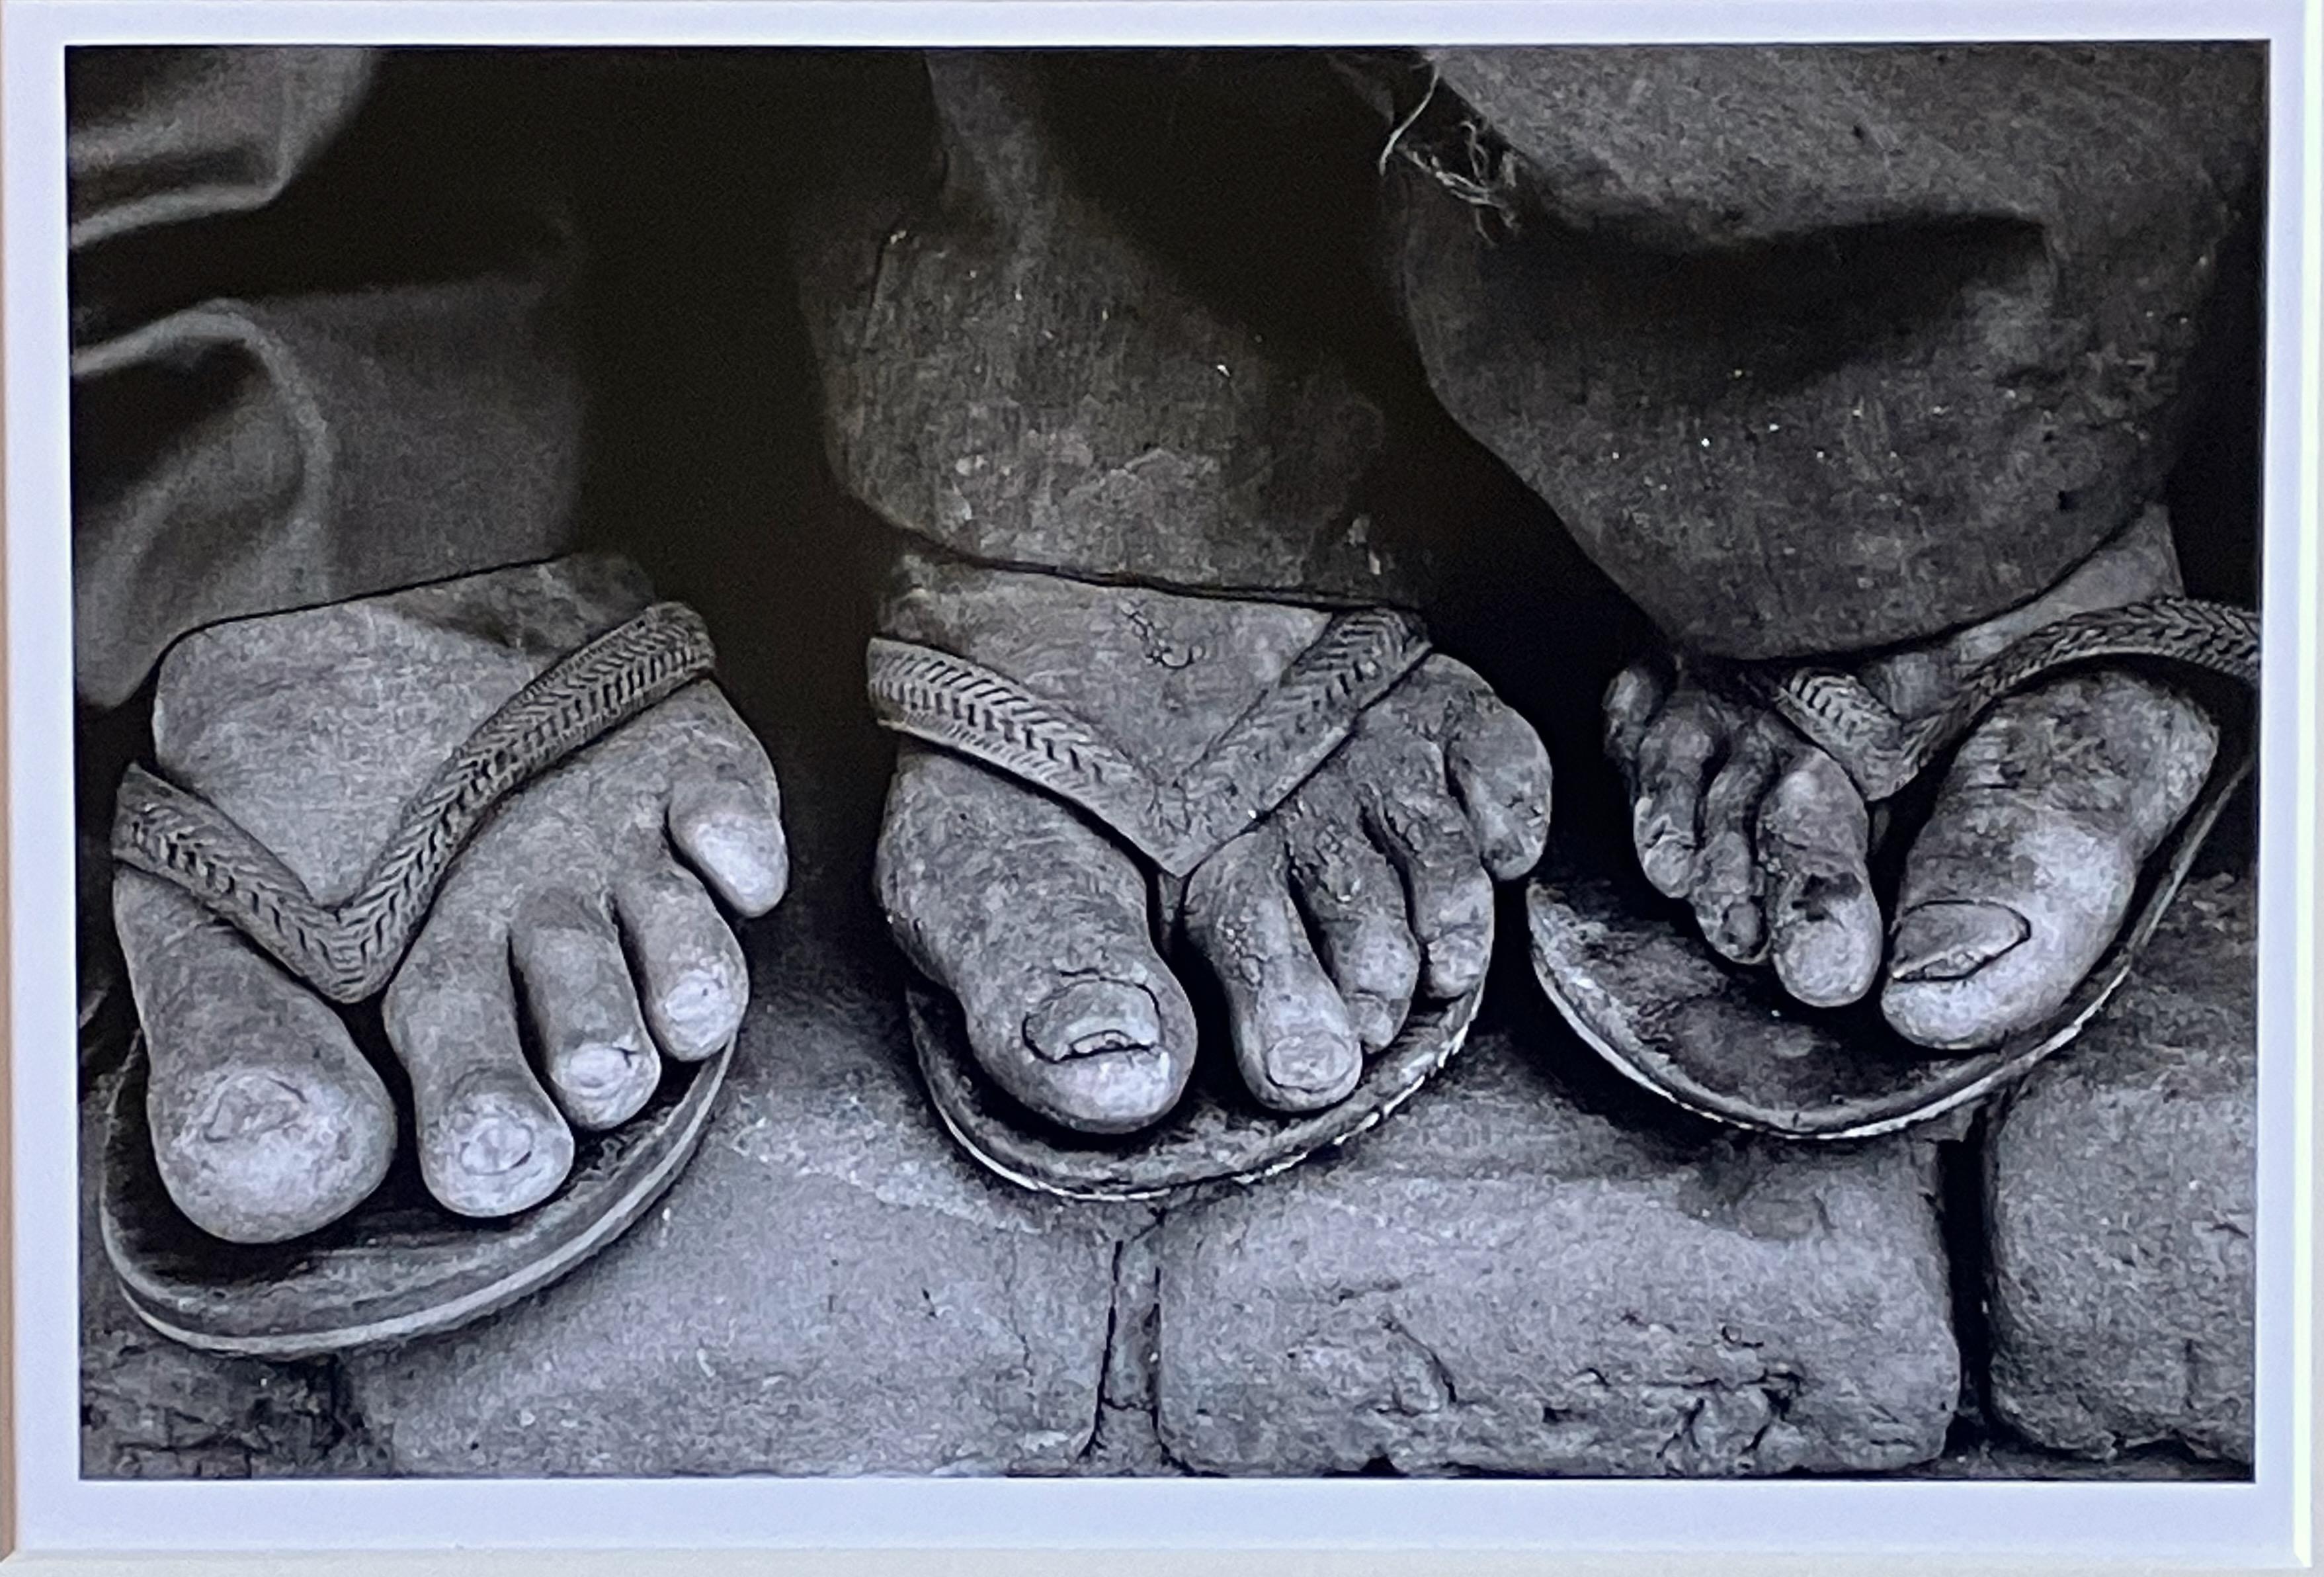 Feet, Brazil - Photograph by Sebastião Salgado